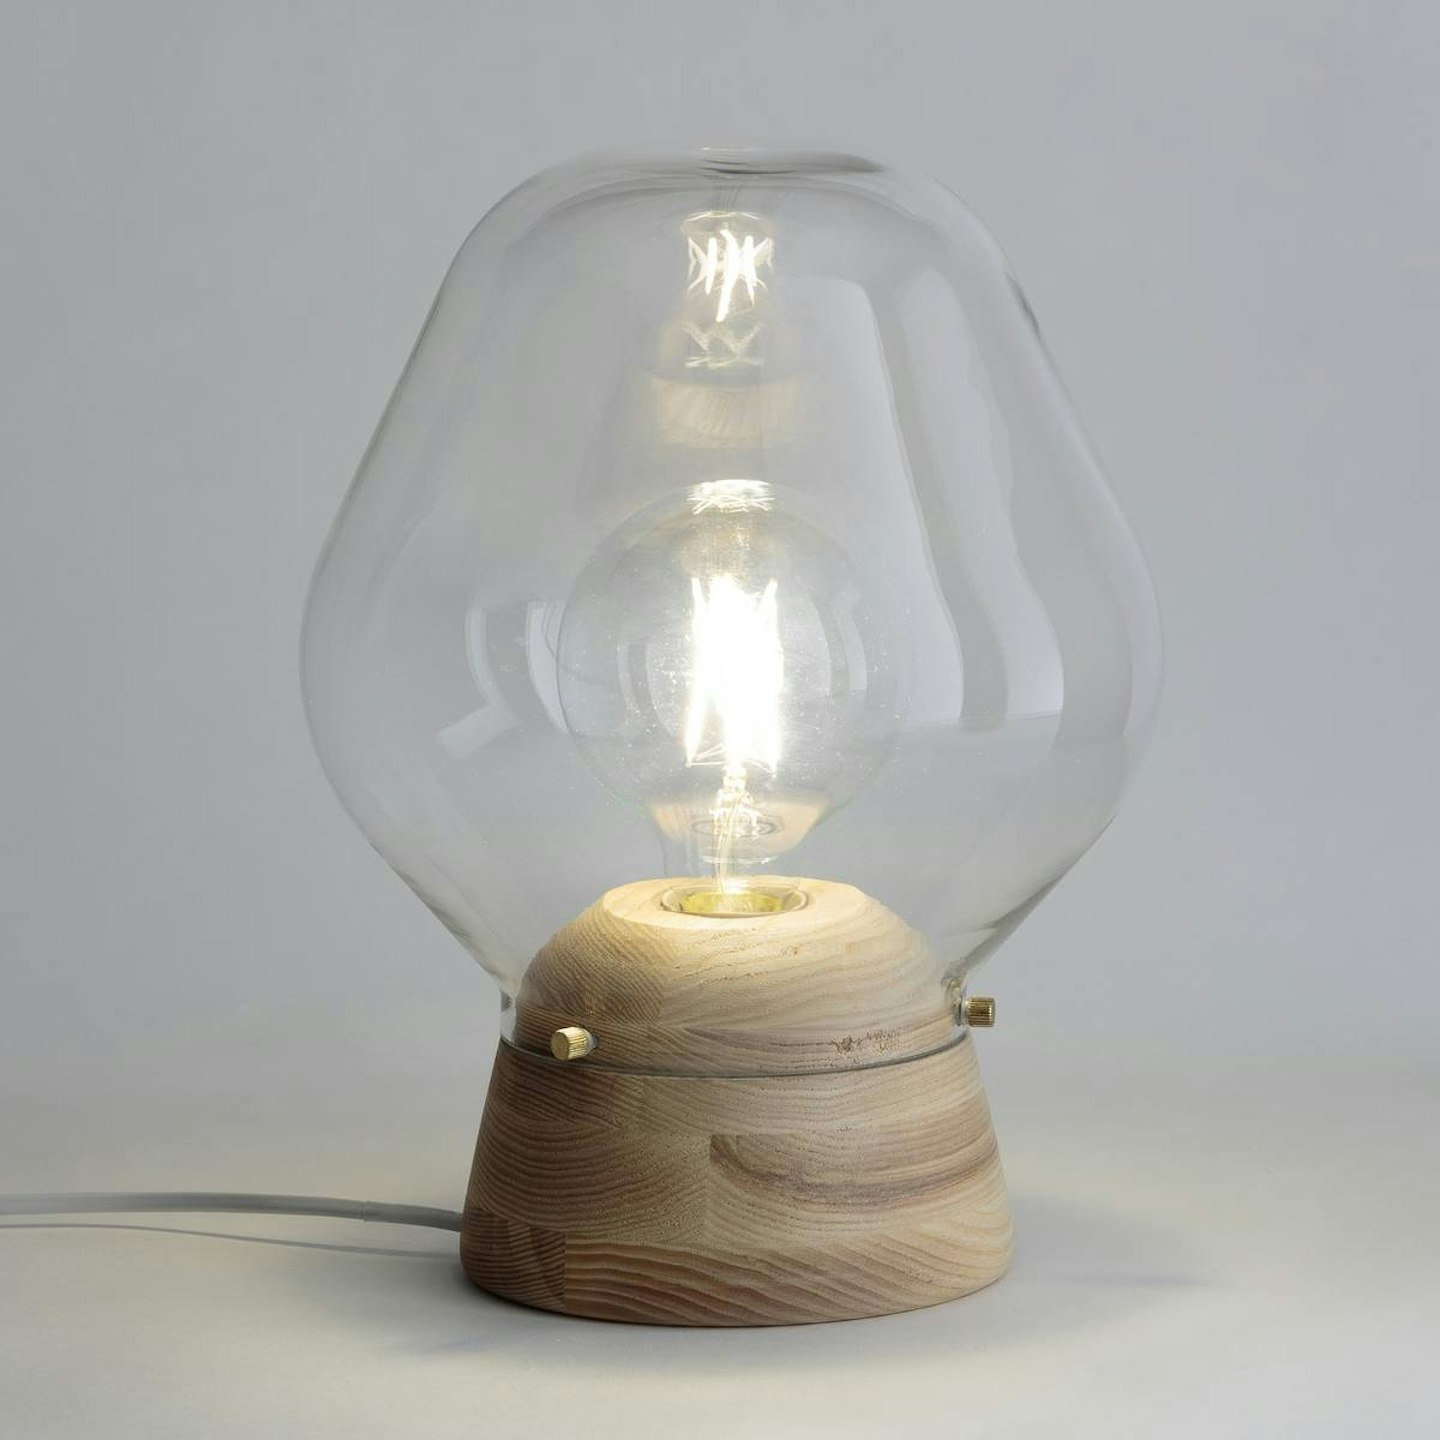 La Redoute, Nasoa Glass & Wood Table Lamp, £99